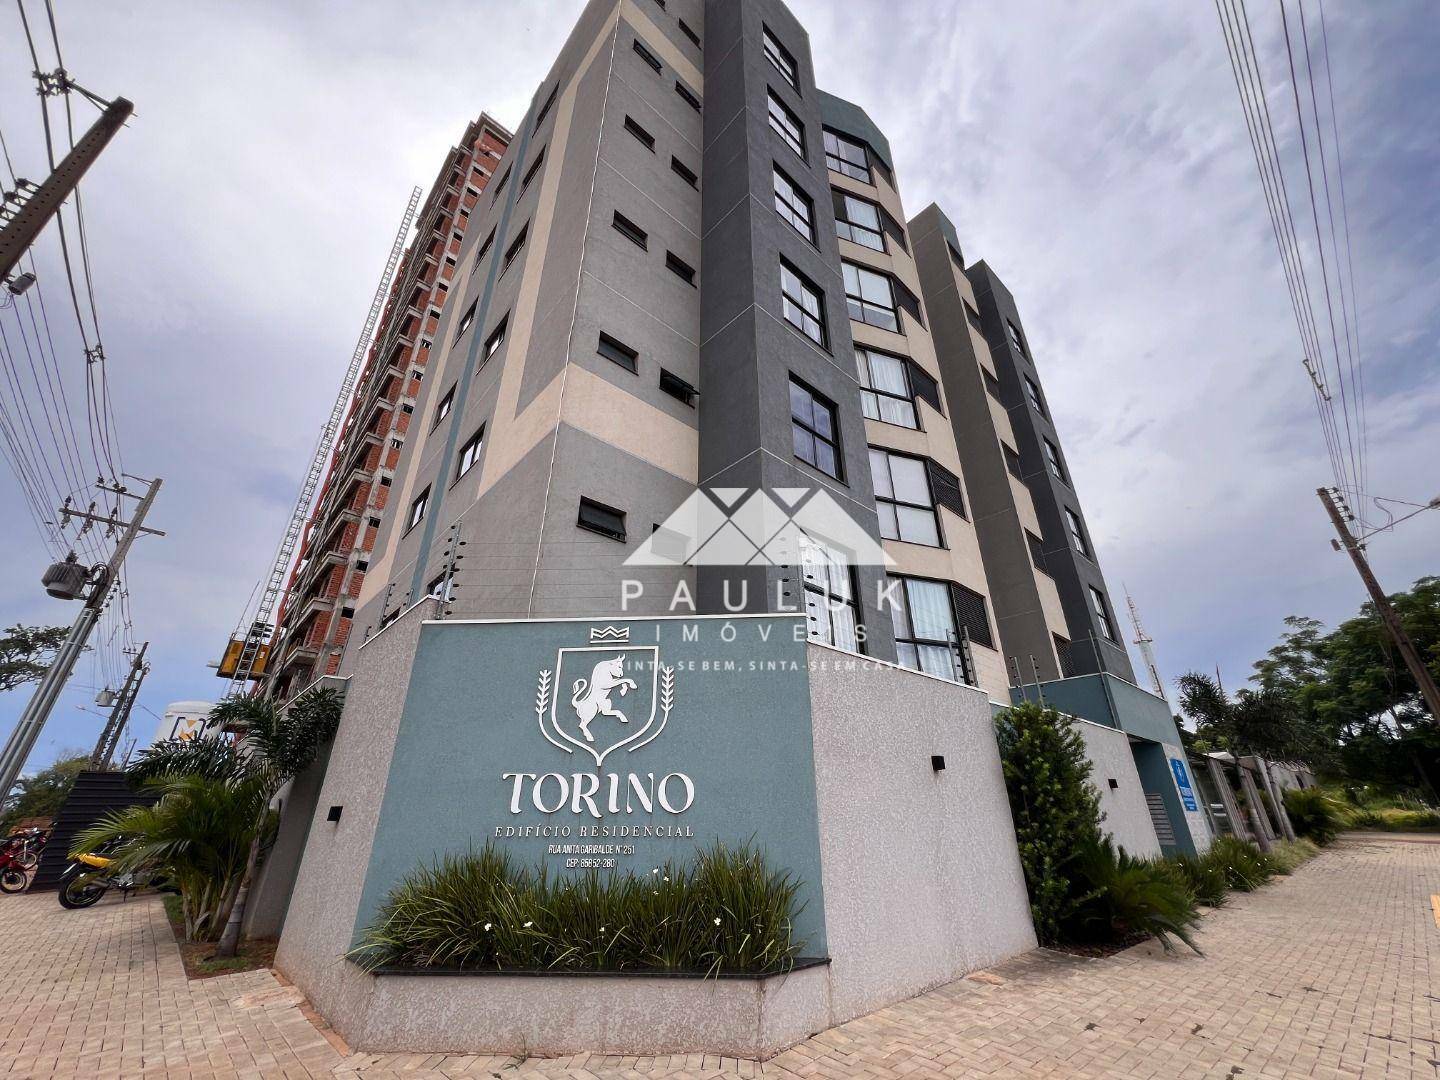 Apartamento com 2 Dormitórios Sendo 1 Suíte à venda Por R$ 550.000 - Edifício Residencial Torino - F | PAULUK IMÓVEIS | Portal OBusca